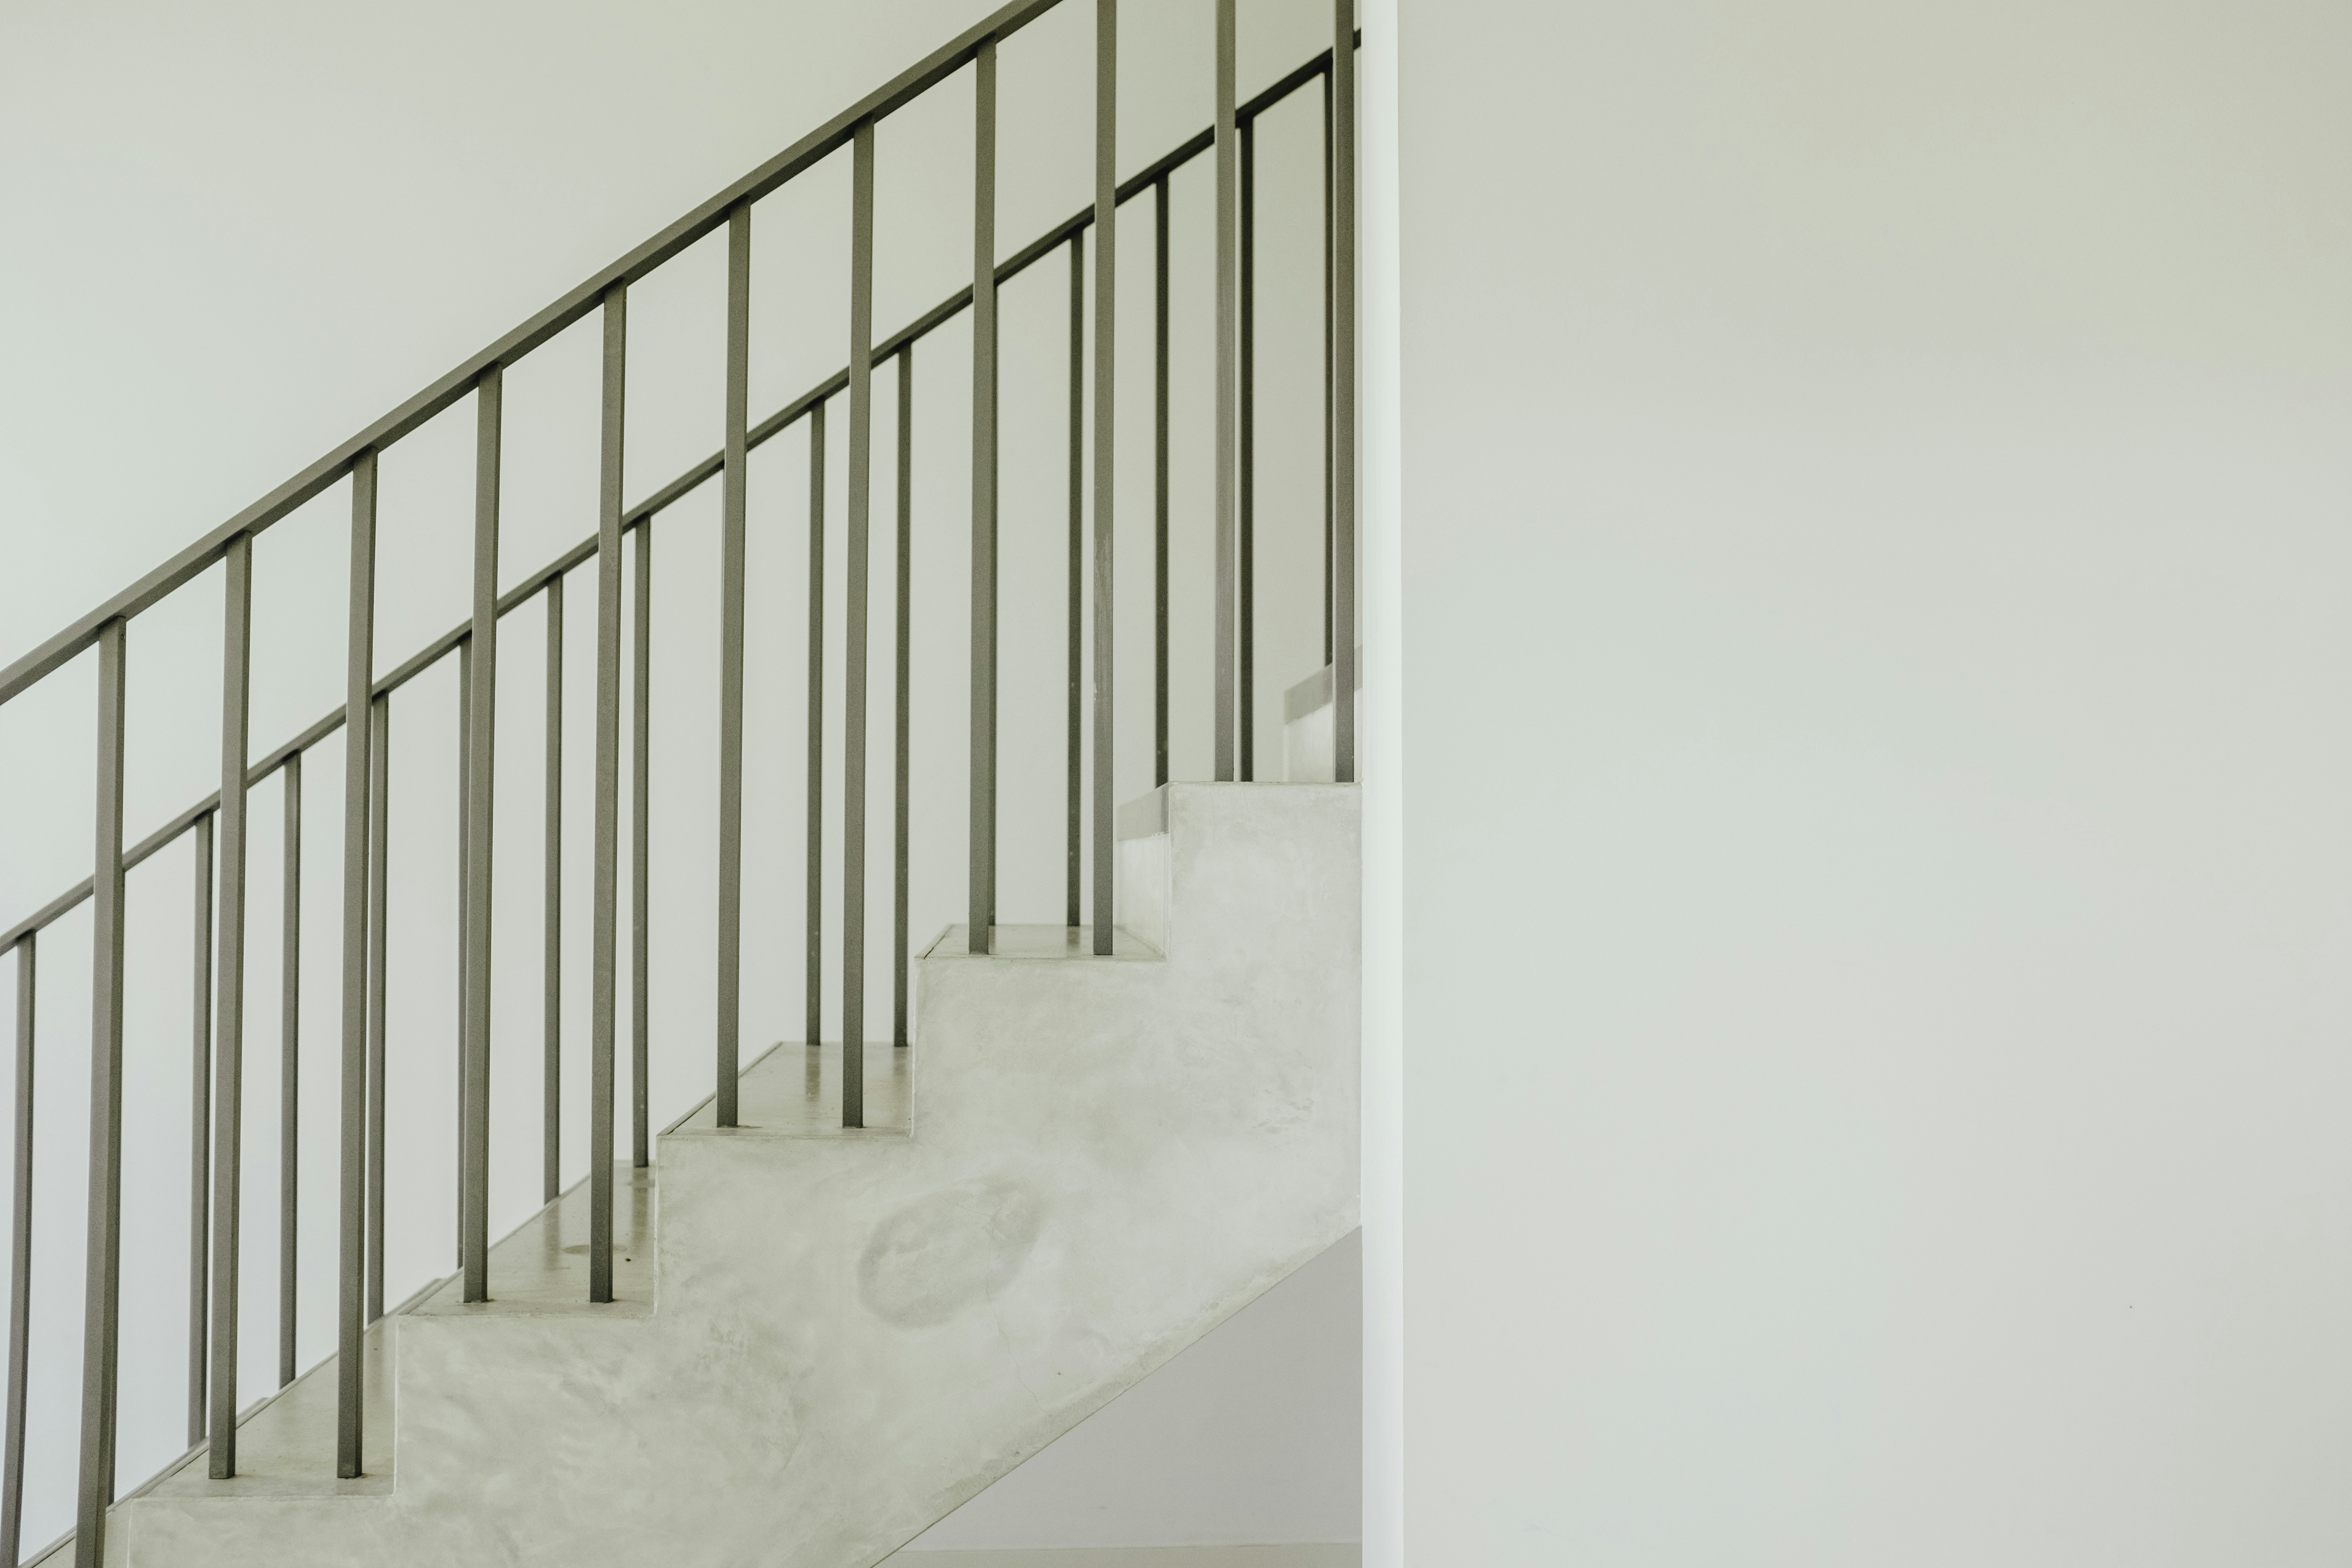 Rekonstrukce schodiště v rodinném domě: Proměňte svůj interiér k lepšímu